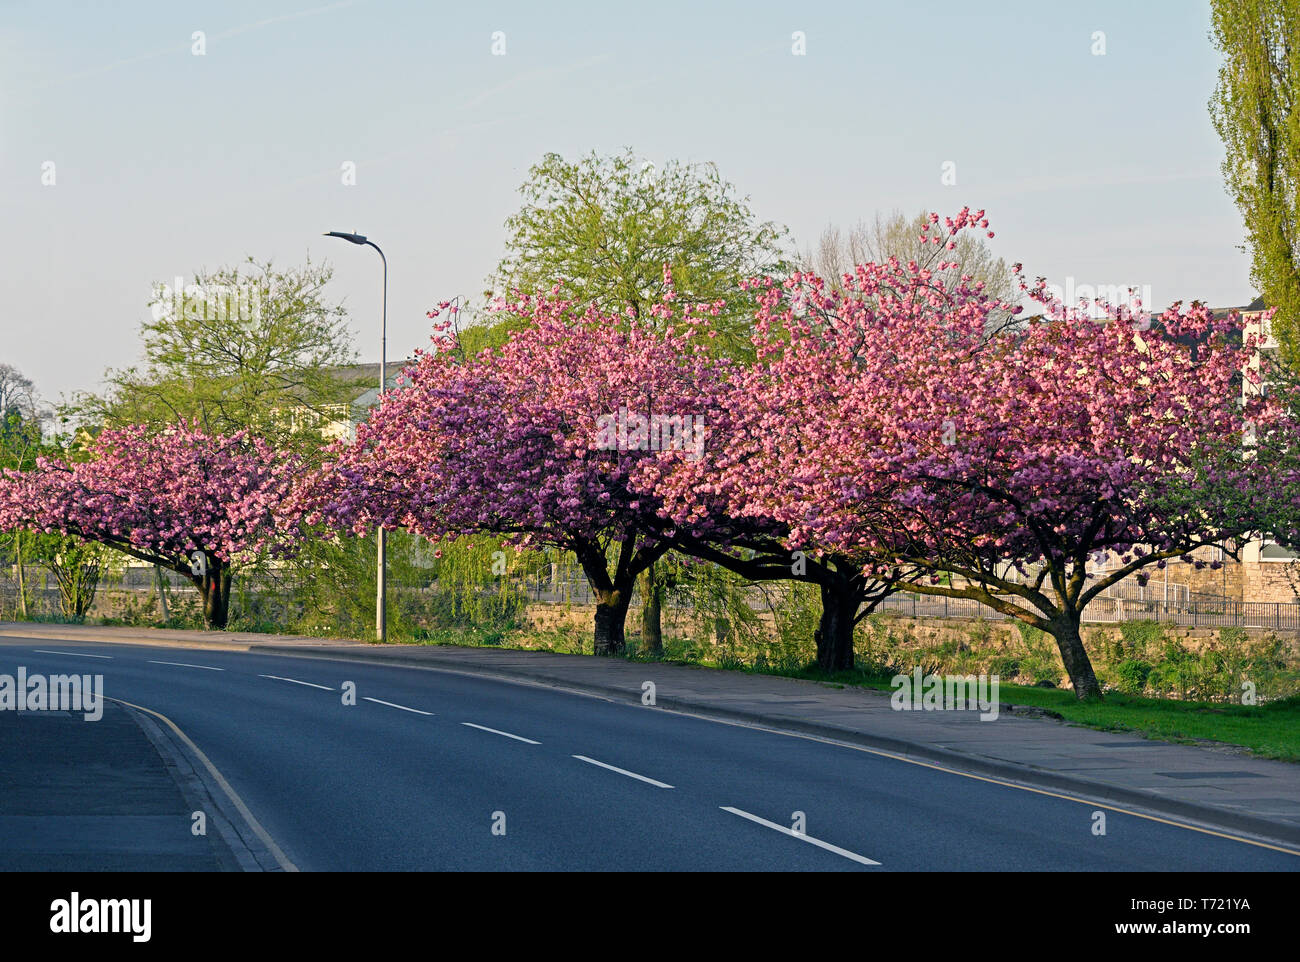 Floraison rose des cerisiers (Prunus 'Kanzan') en pleine floraison au printemps. Aynam Road, Kendal, Cumbria, Angleterre, Royaume-Uni, Europe. Banque D'Images